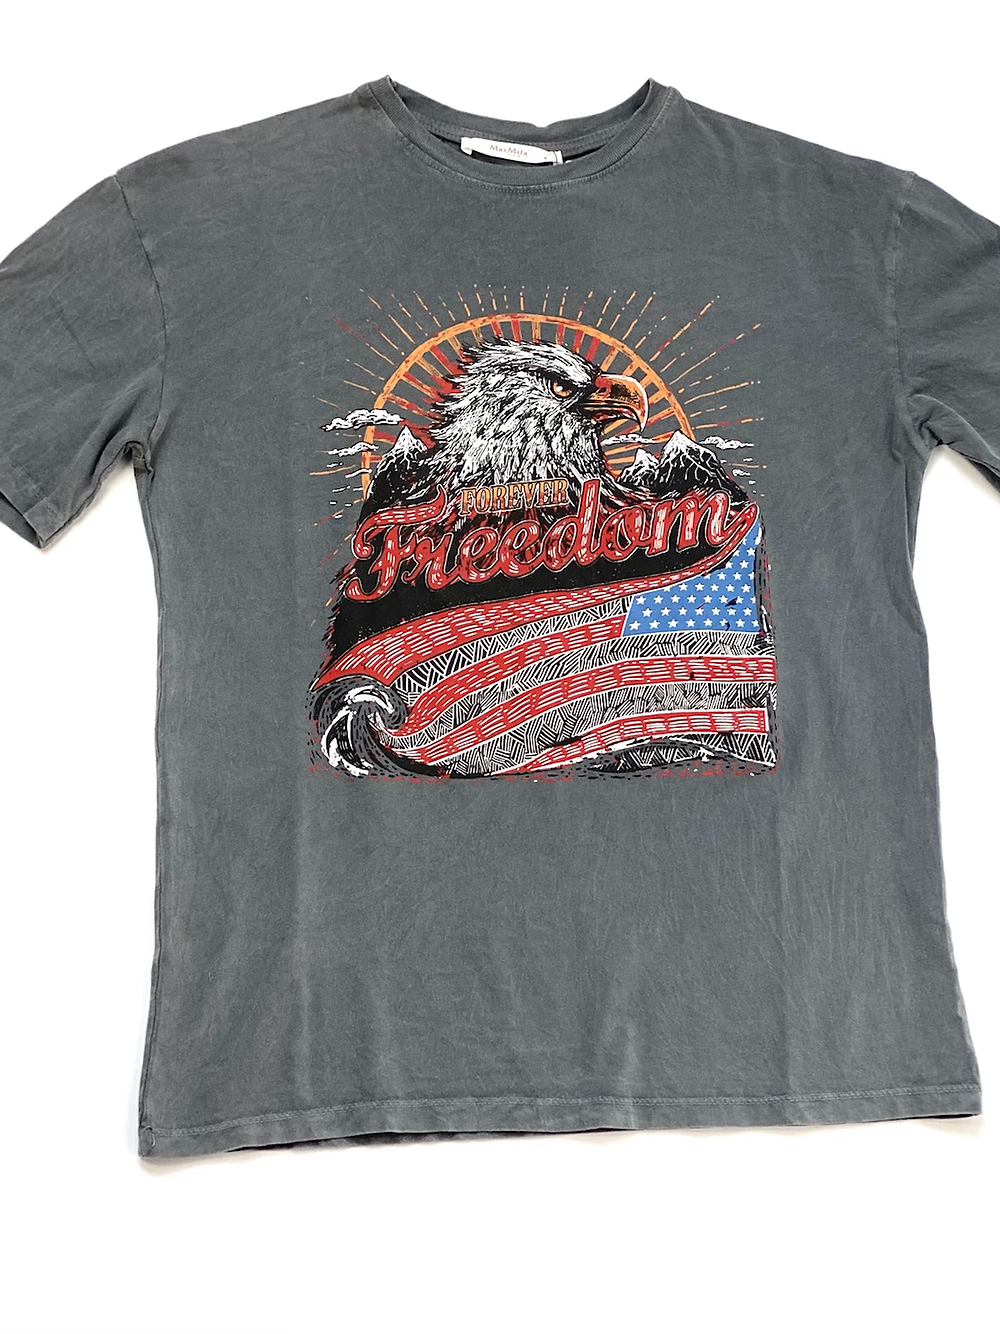 Freedom t-shirt met bedrukking van een adelaar.